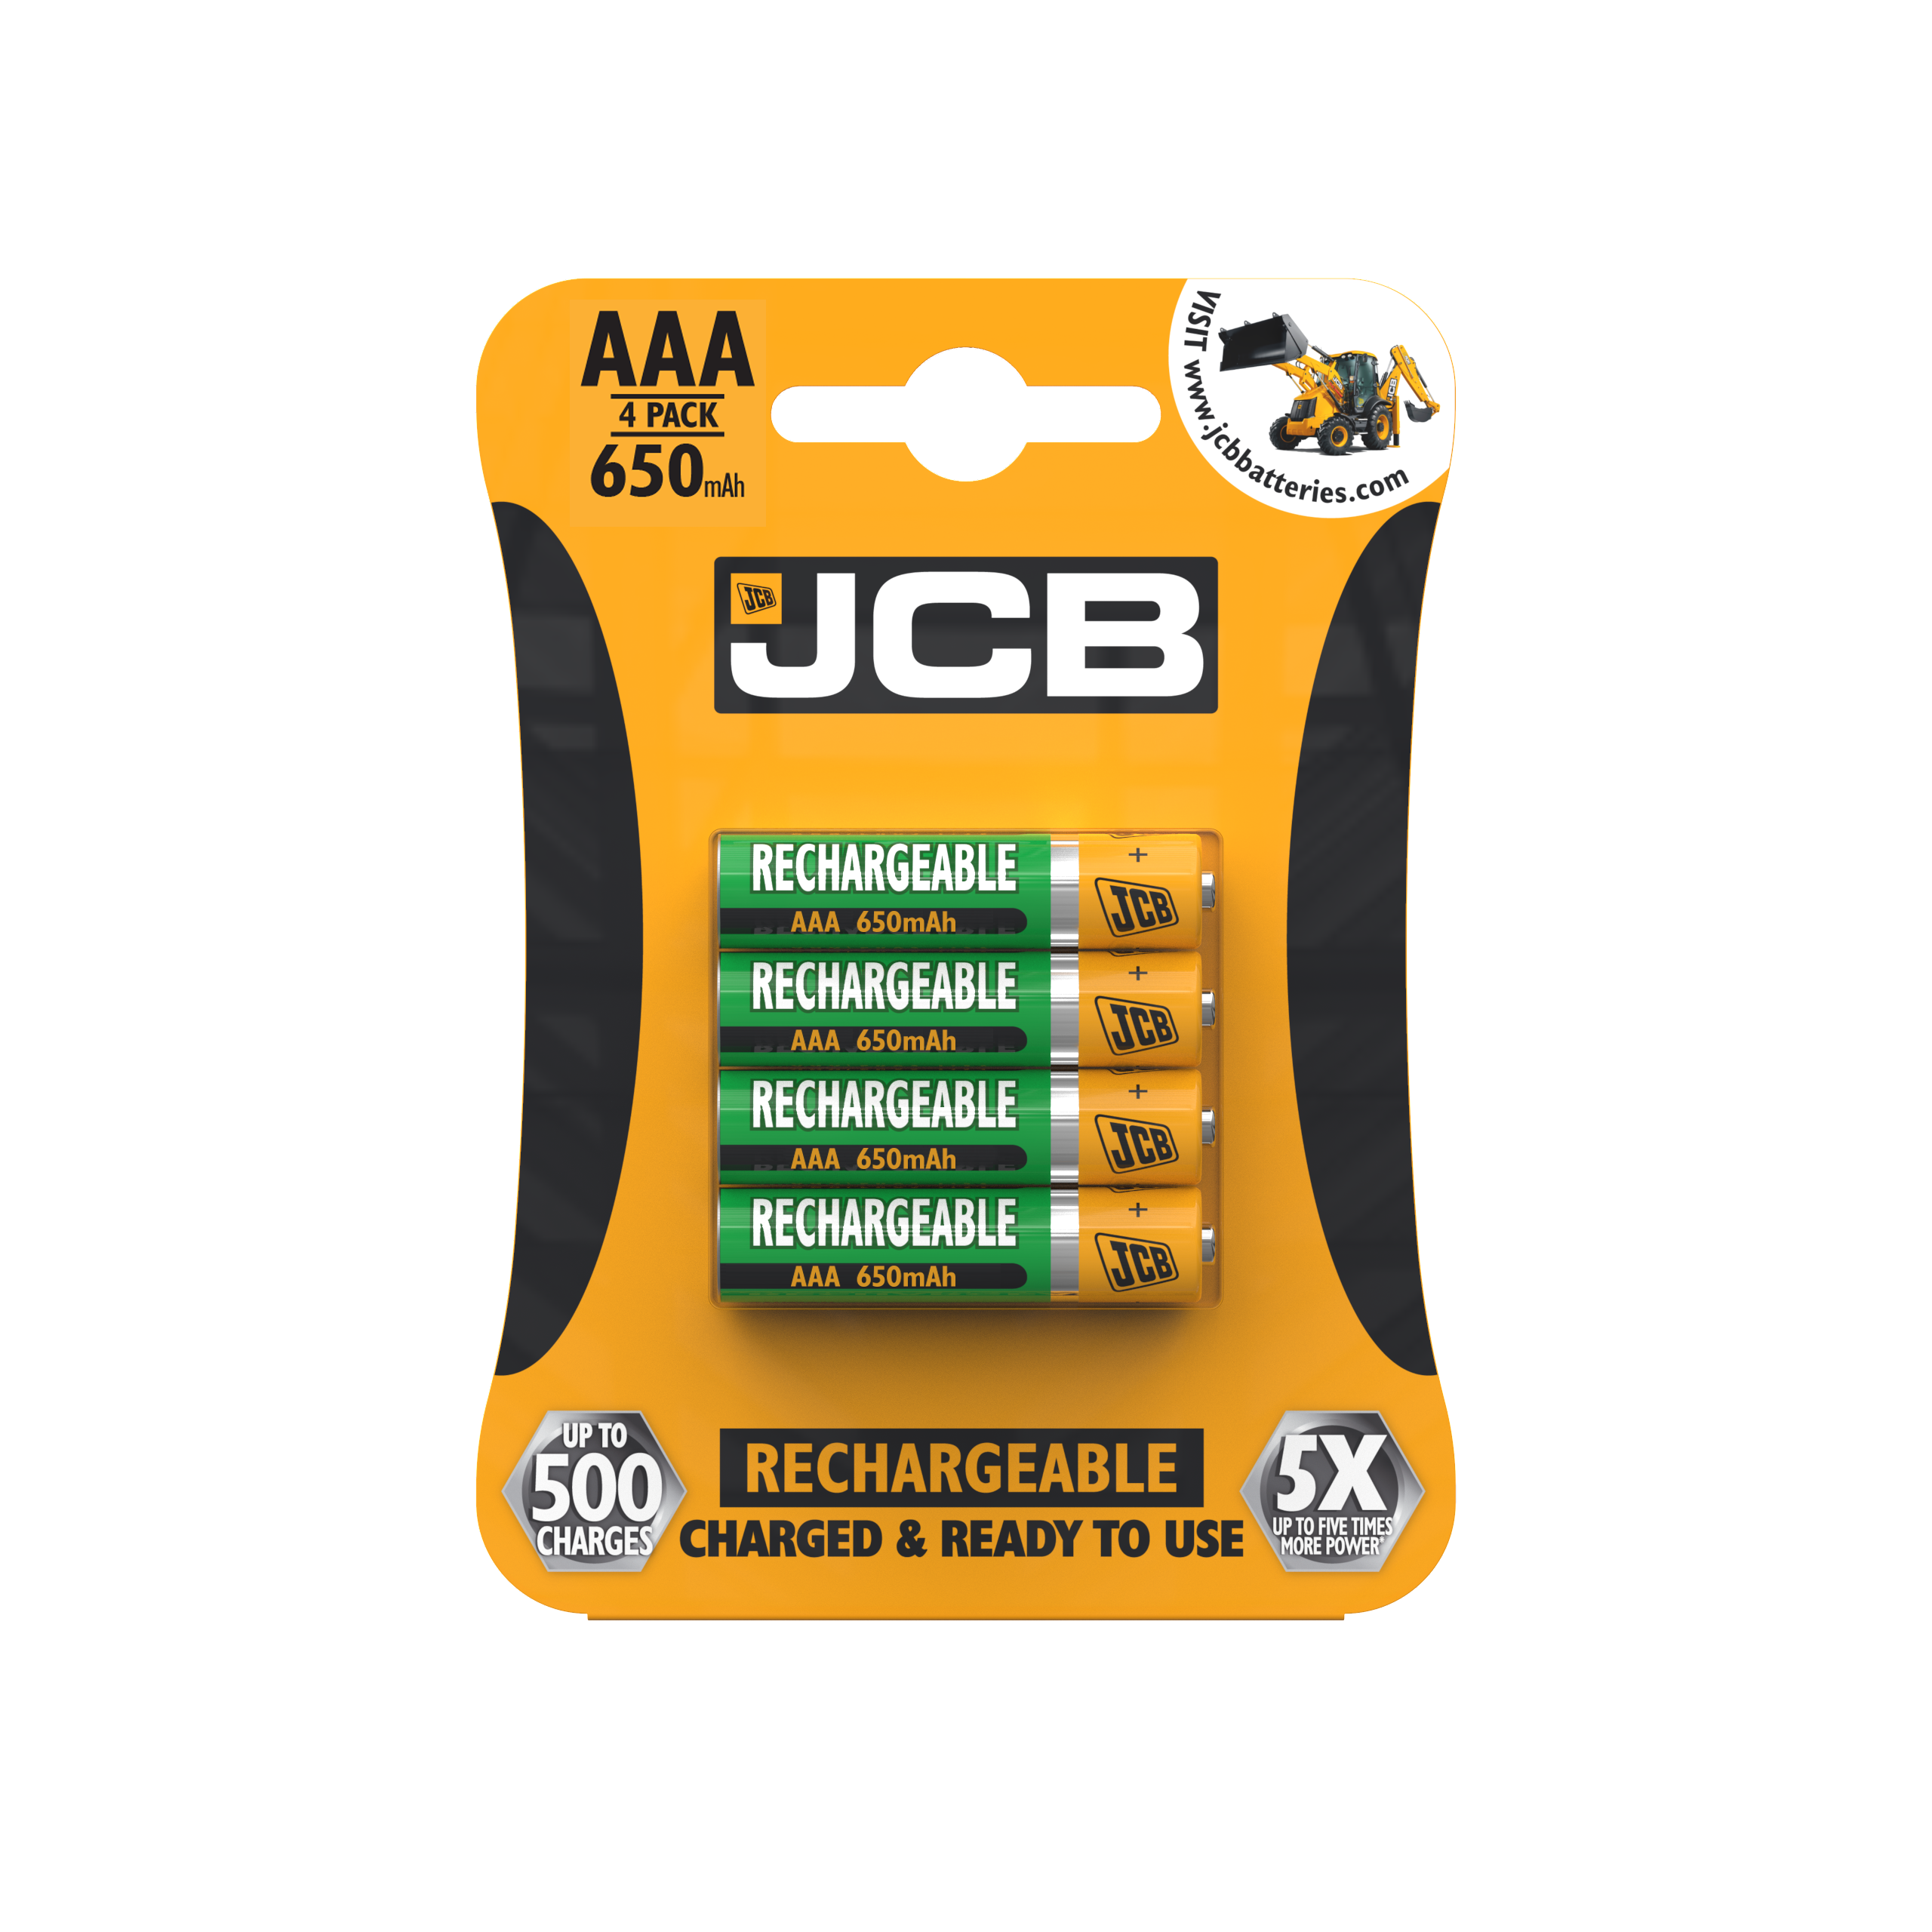 JCB AAA 650 mAh recargable, paquete de 4